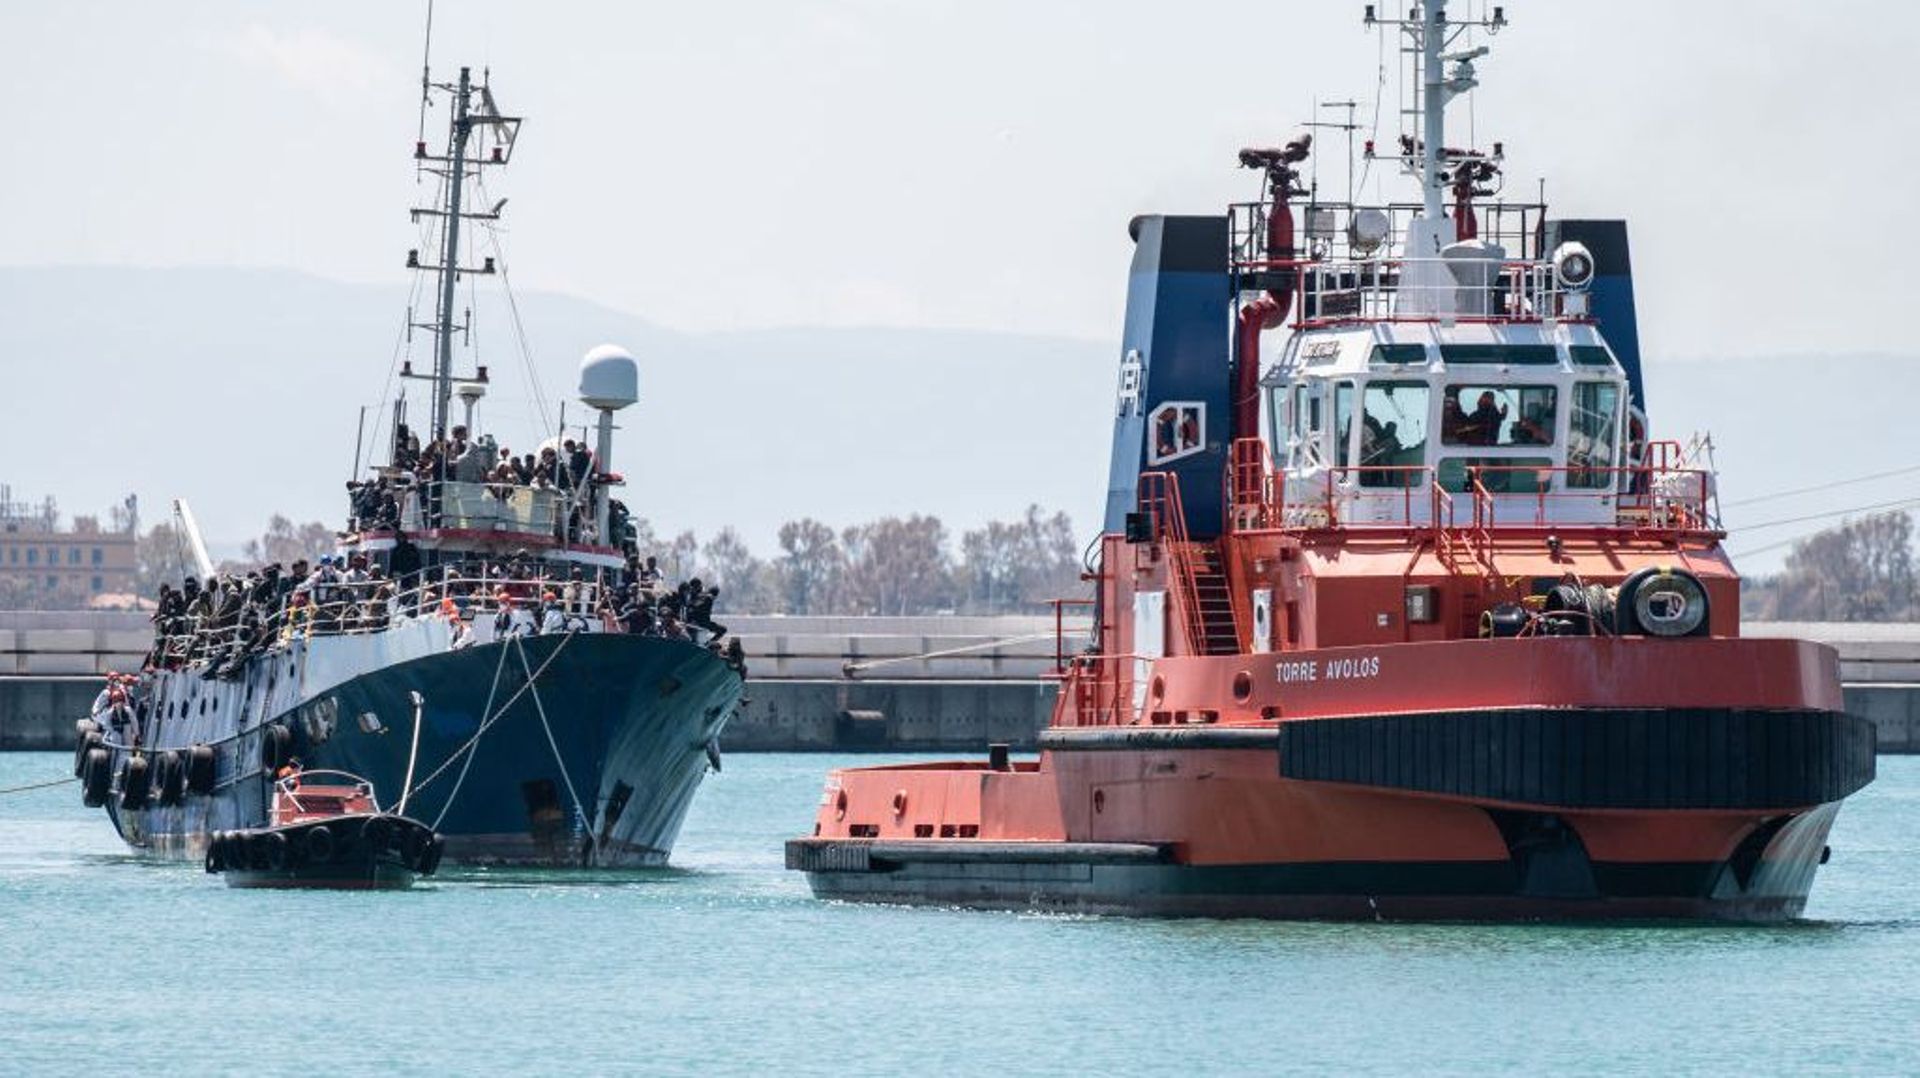 Un bateau de pêche transportant près de 700 réfugiés, remorqué par un remorqueur, entre dans le port de Catane. Le navire a été secouru par le Nave Peluso de la Garde côtière italienne le 12 avril 2023 à Catane, en Italie.